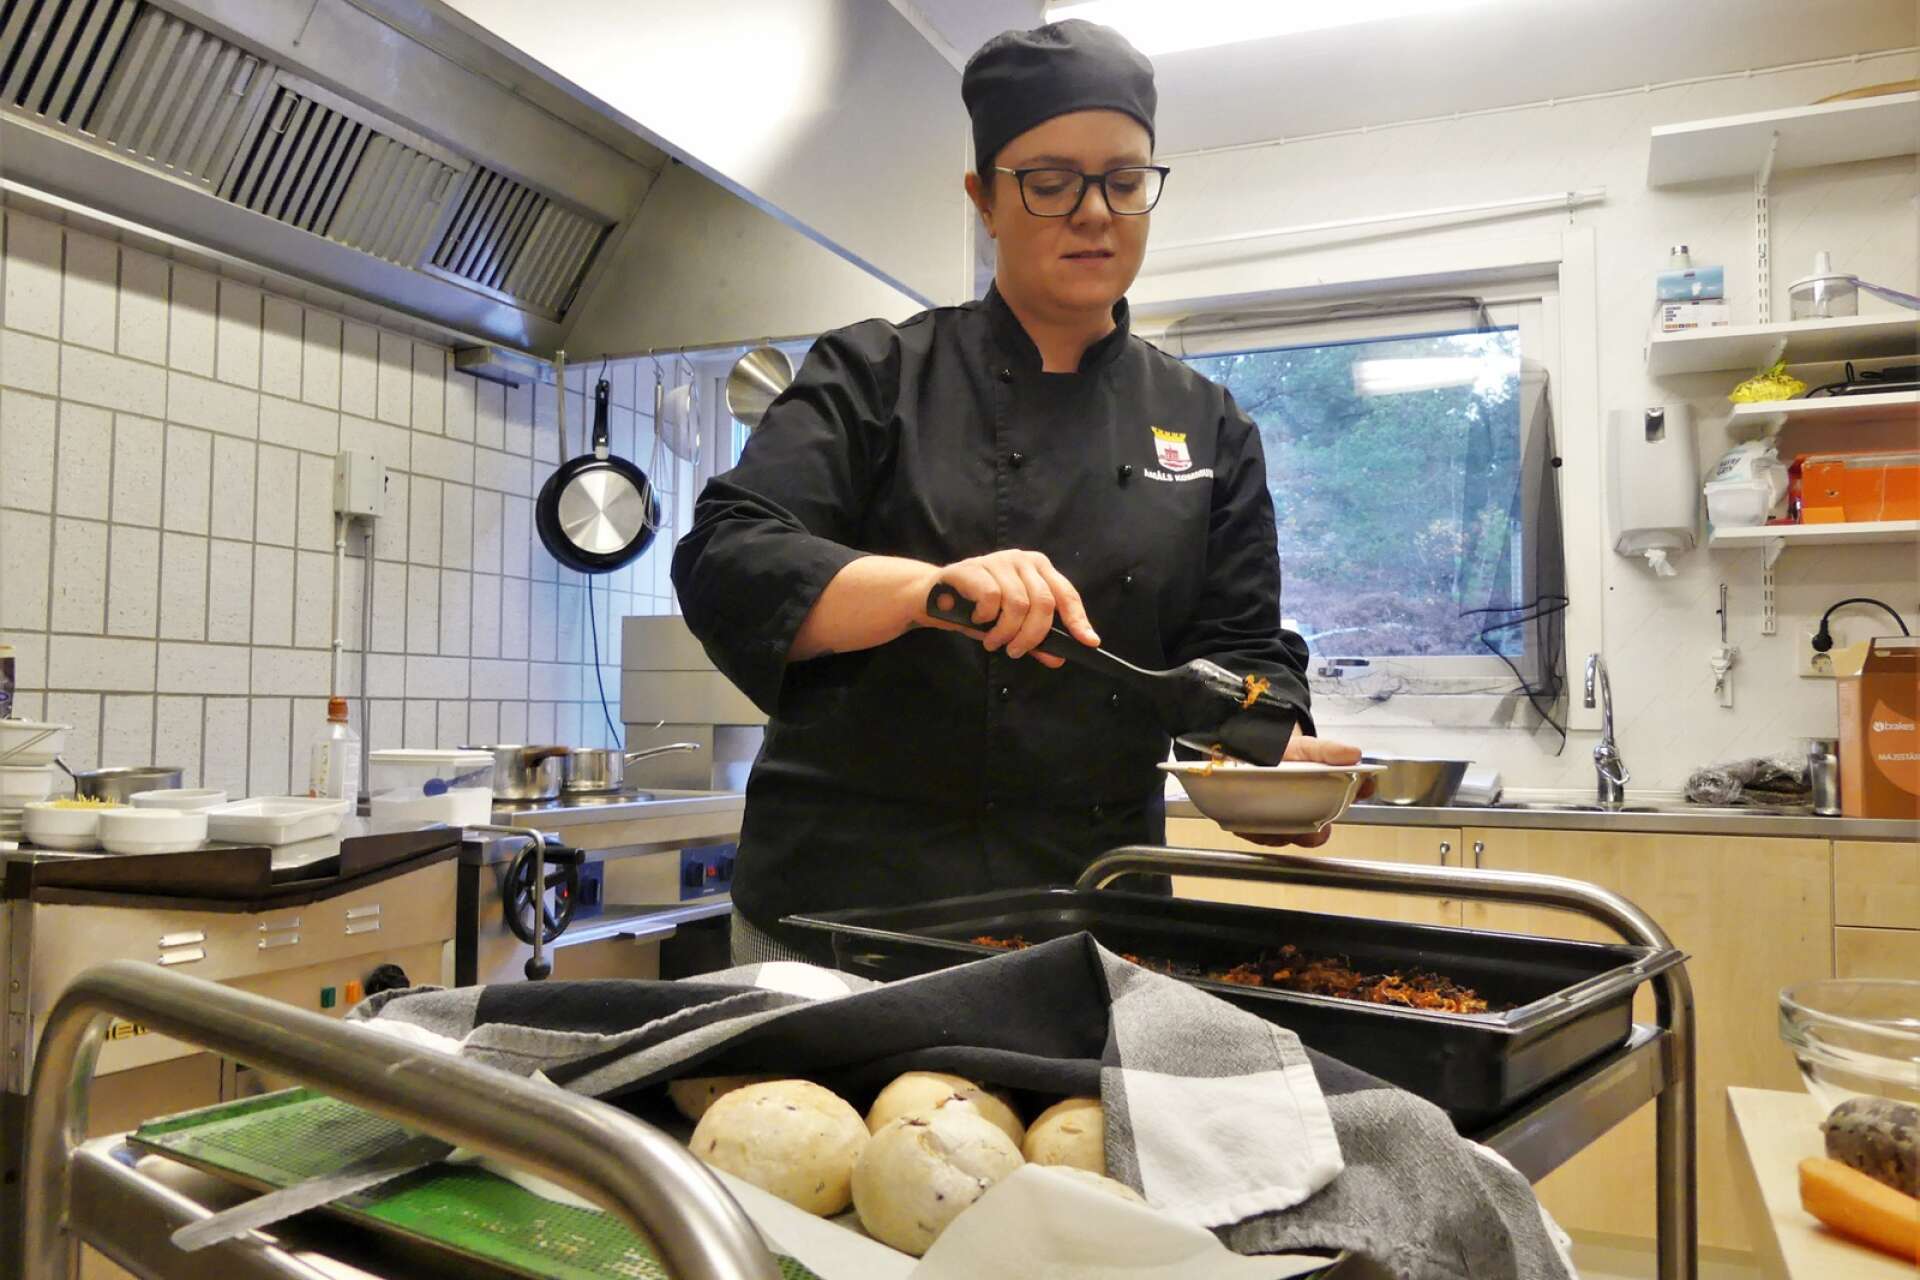 Köksmästare Susanne Carlsson lagade idel mat med morötter på Nolby förskola under Måltidens dag.